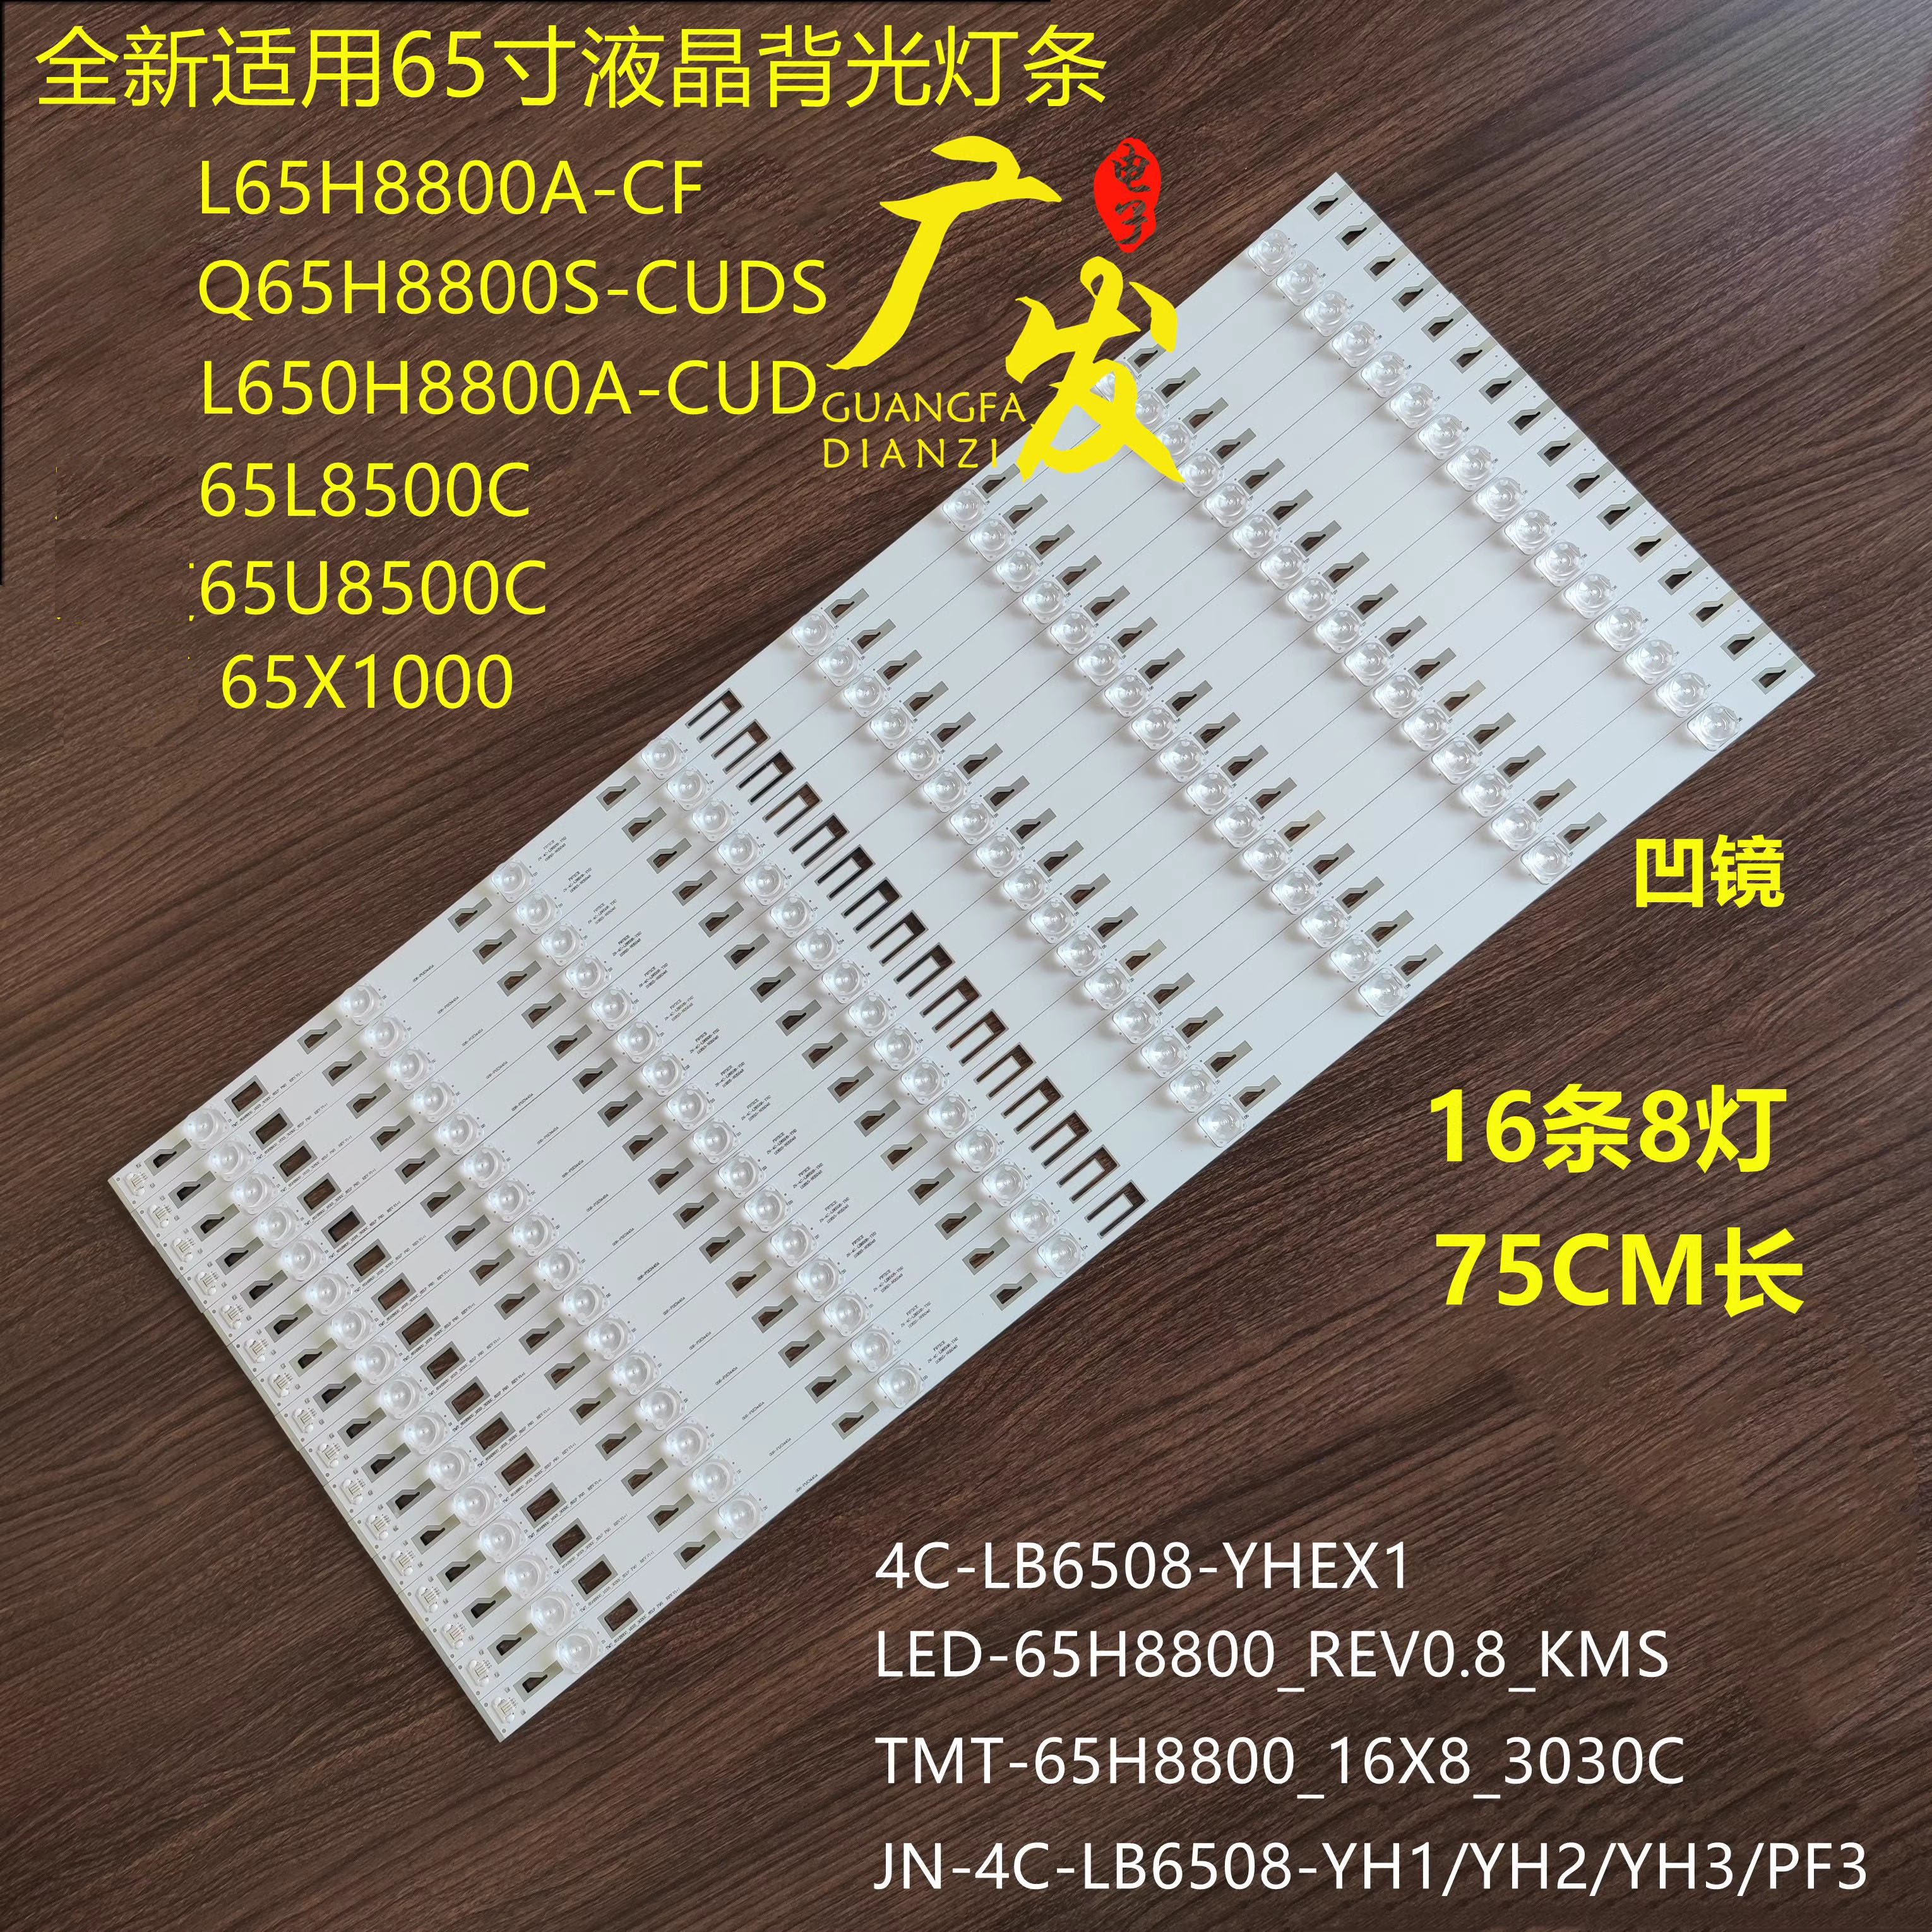 适用TCL L65H8800A-CF曲面灯条JN-4C-LB6508-YH1 YH2 YH3凹透镜 电子元器件市场 显示屏/LCD液晶屏/LED屏/TFT屏 原图主图